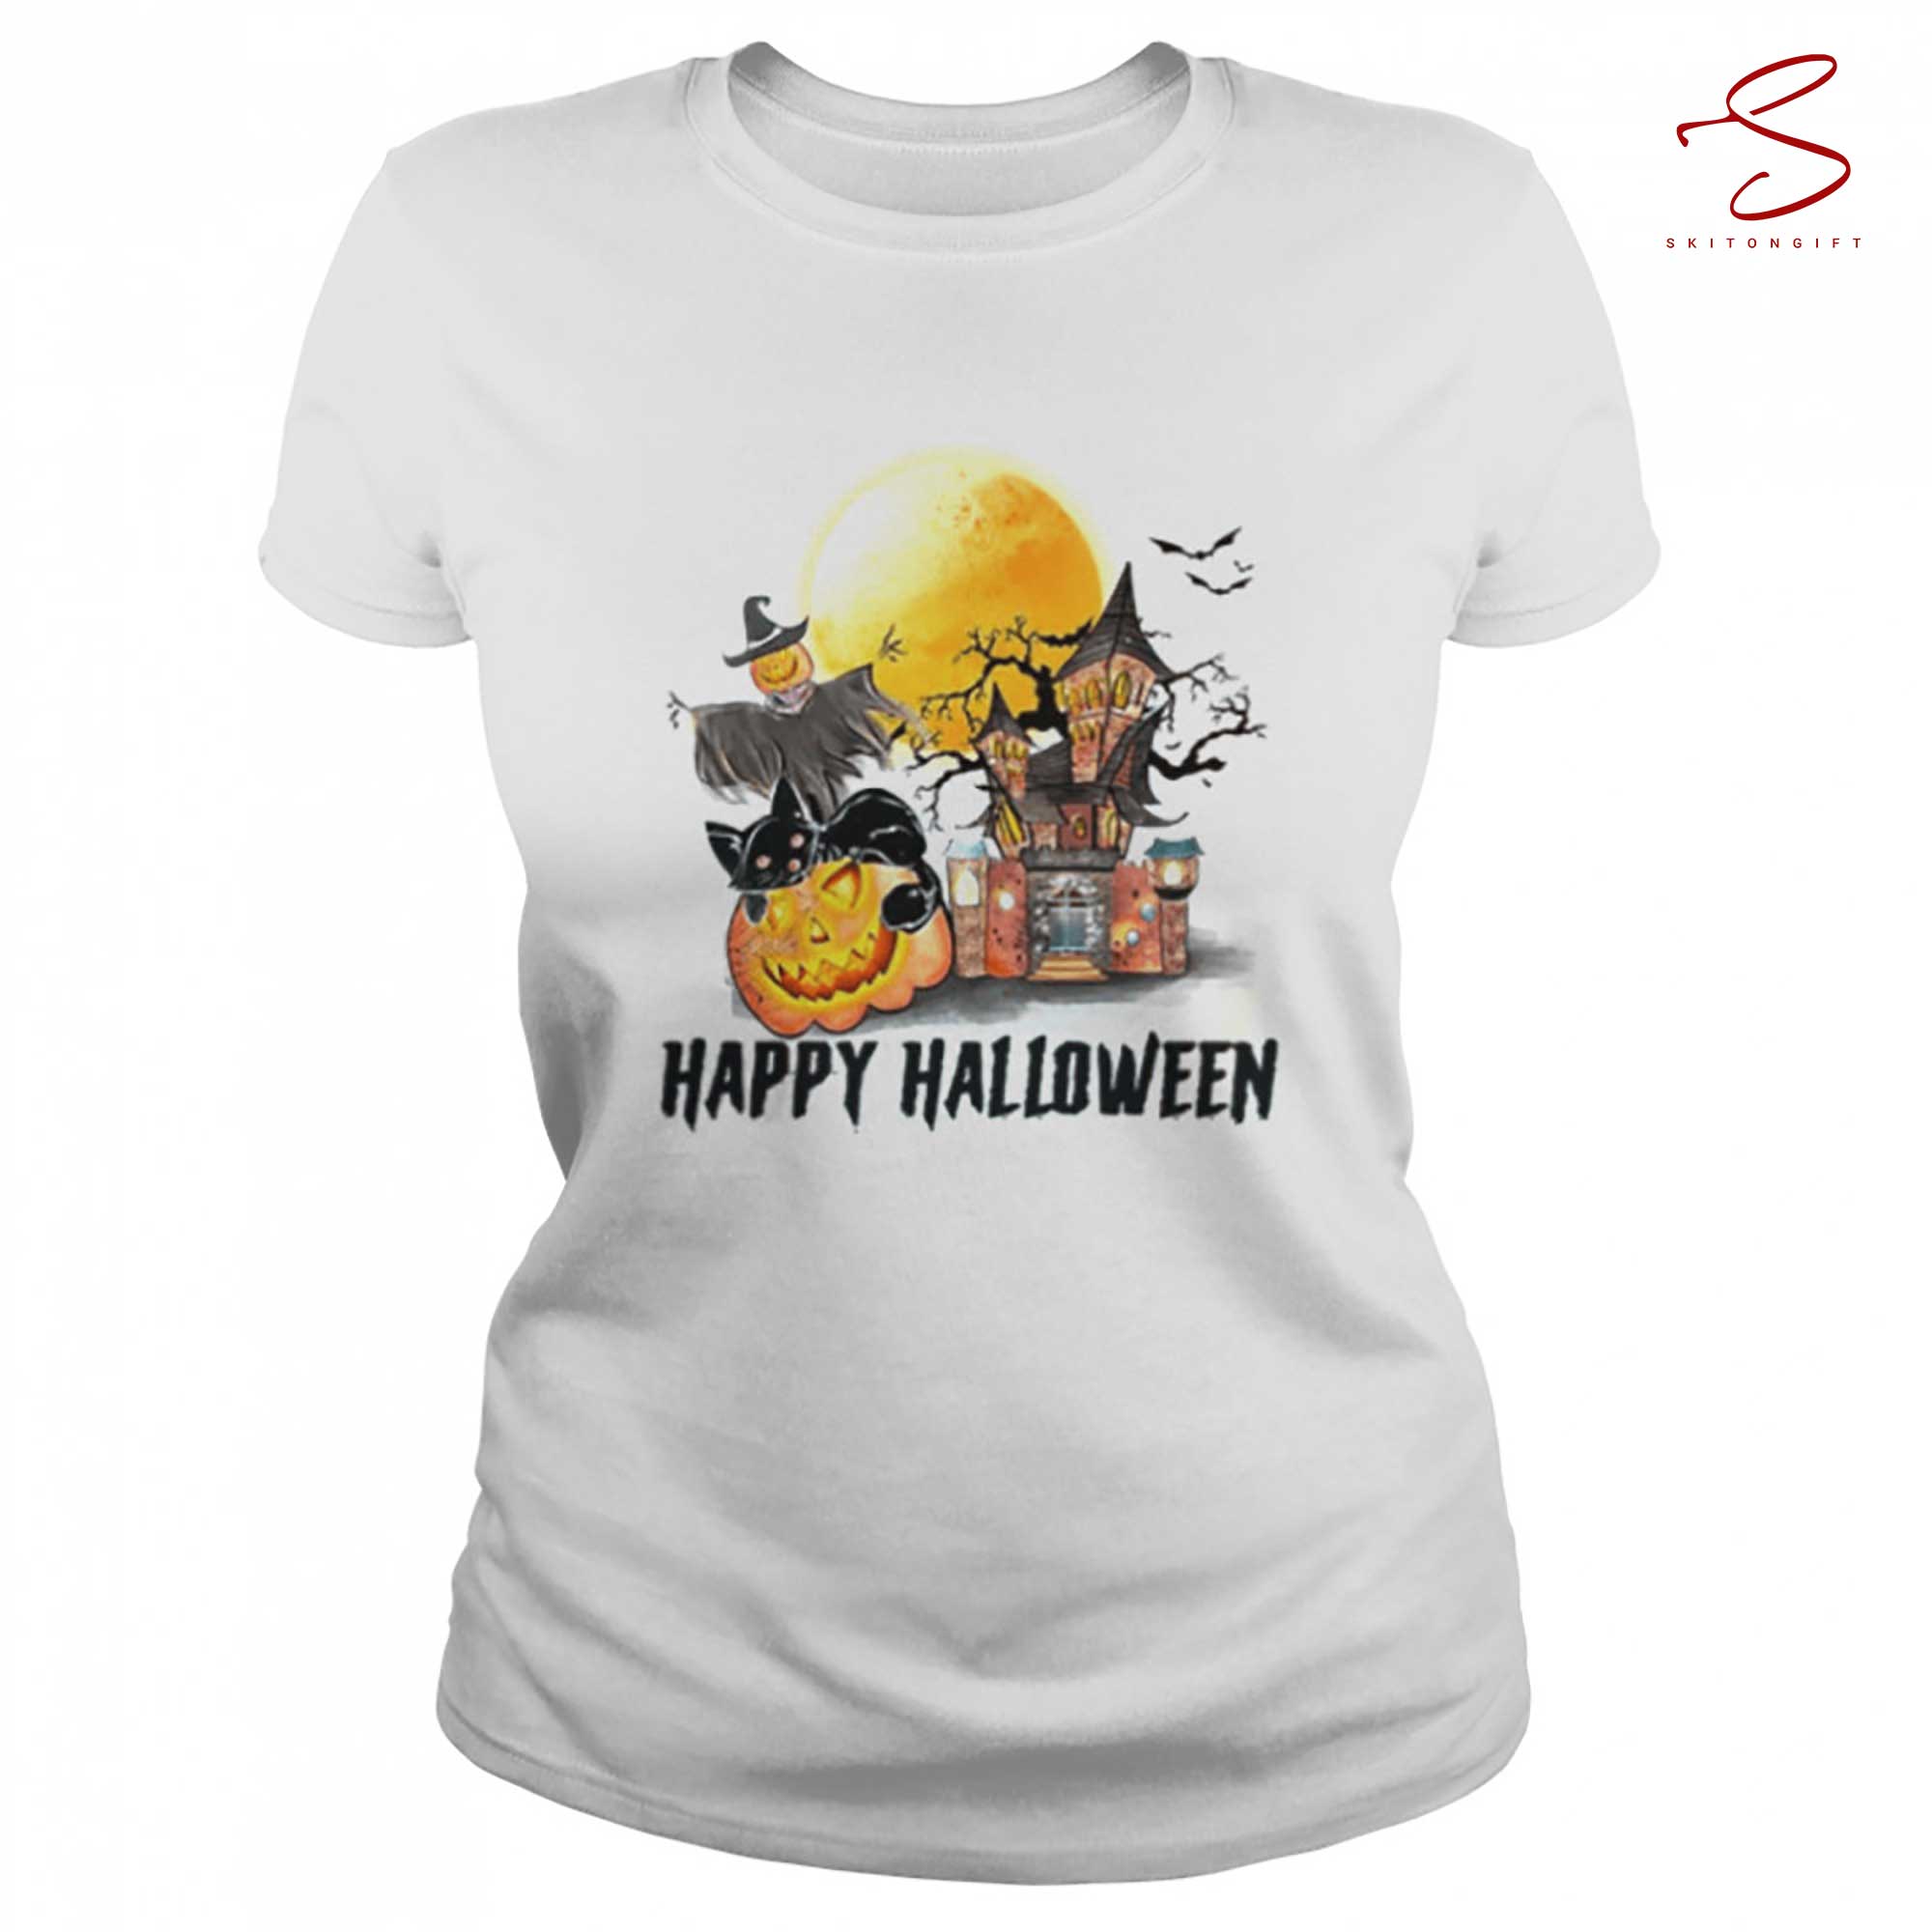 Skitongift Comfort Colors Retro Happy Halloween T Shirt